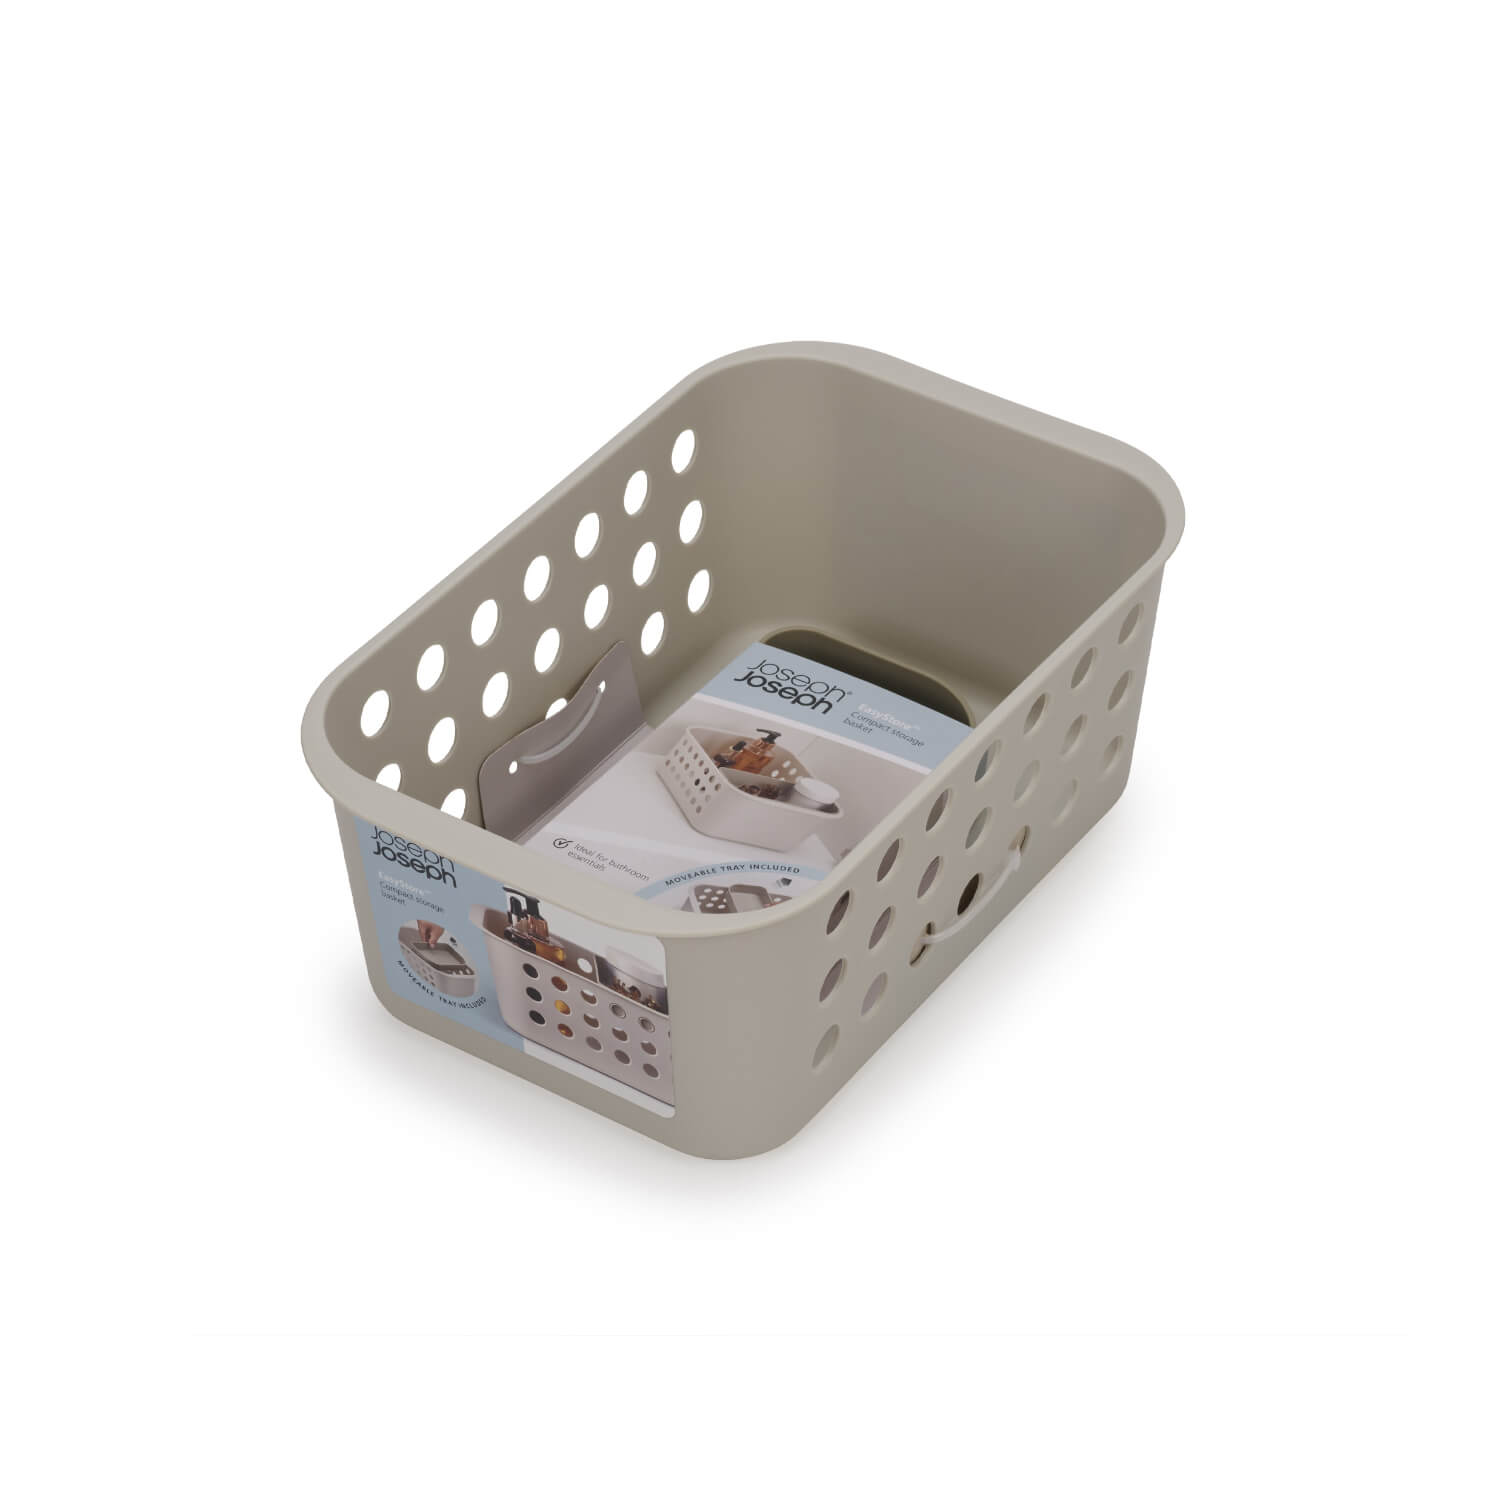 EasyStore™ Large Bathroom Storage Basket